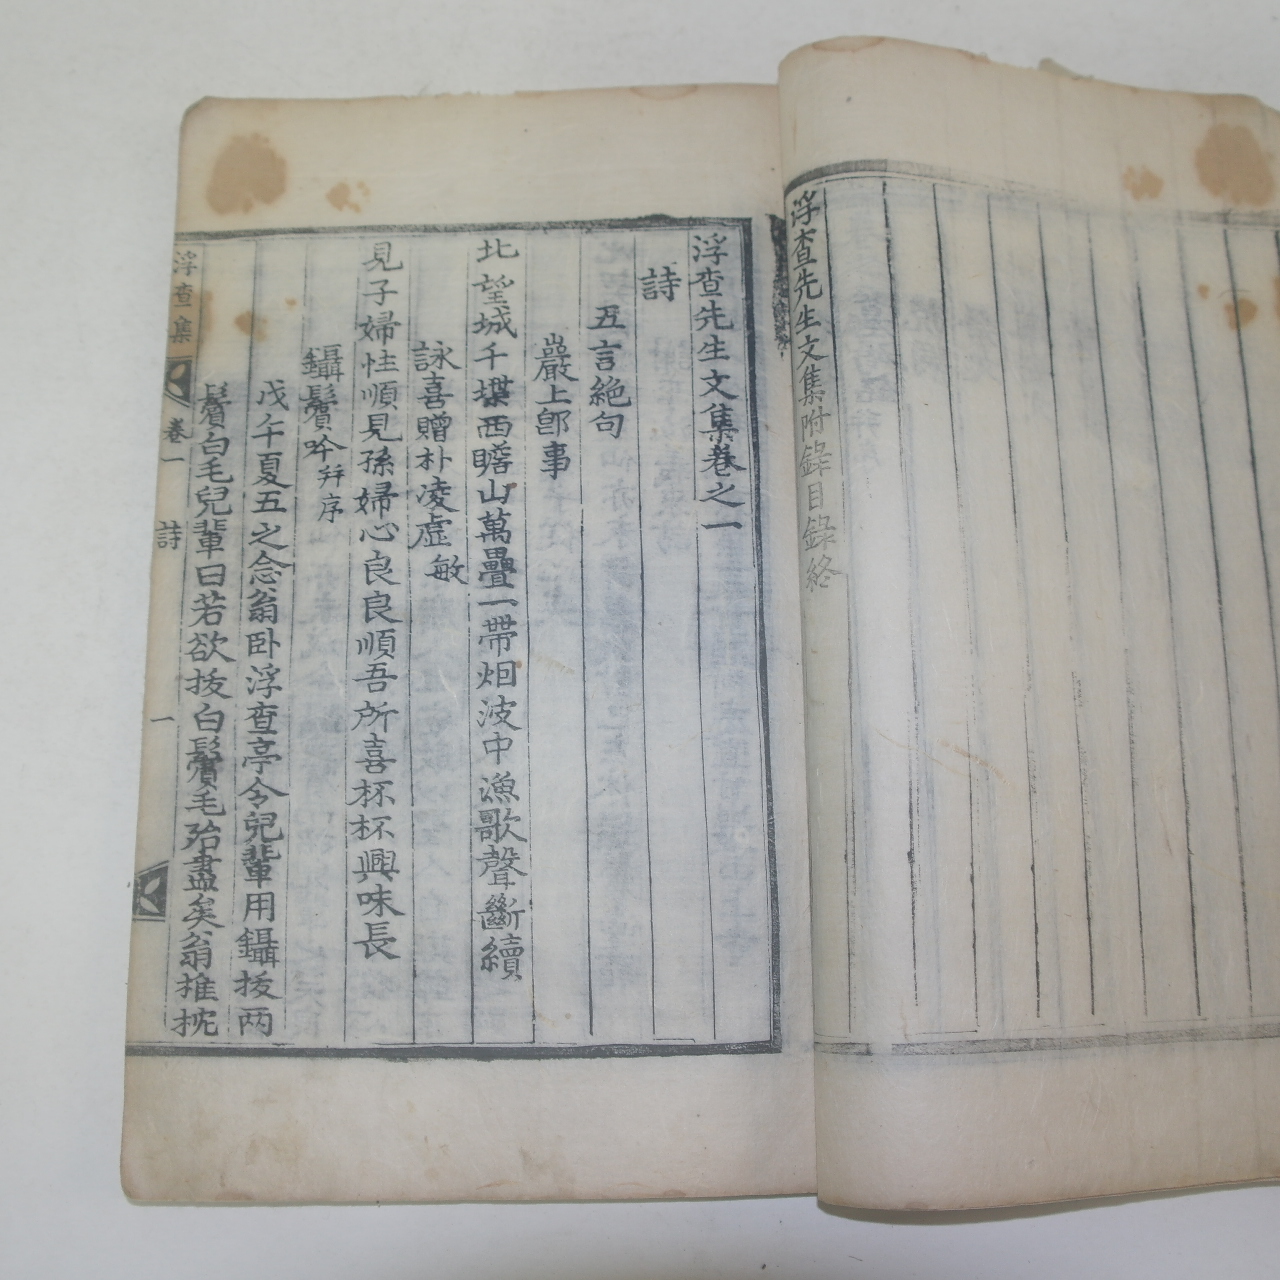 1785년 목판본 창녕성씨 성여신(成汝信) 부사선생문집(浮査先生文集)권1,2  1책